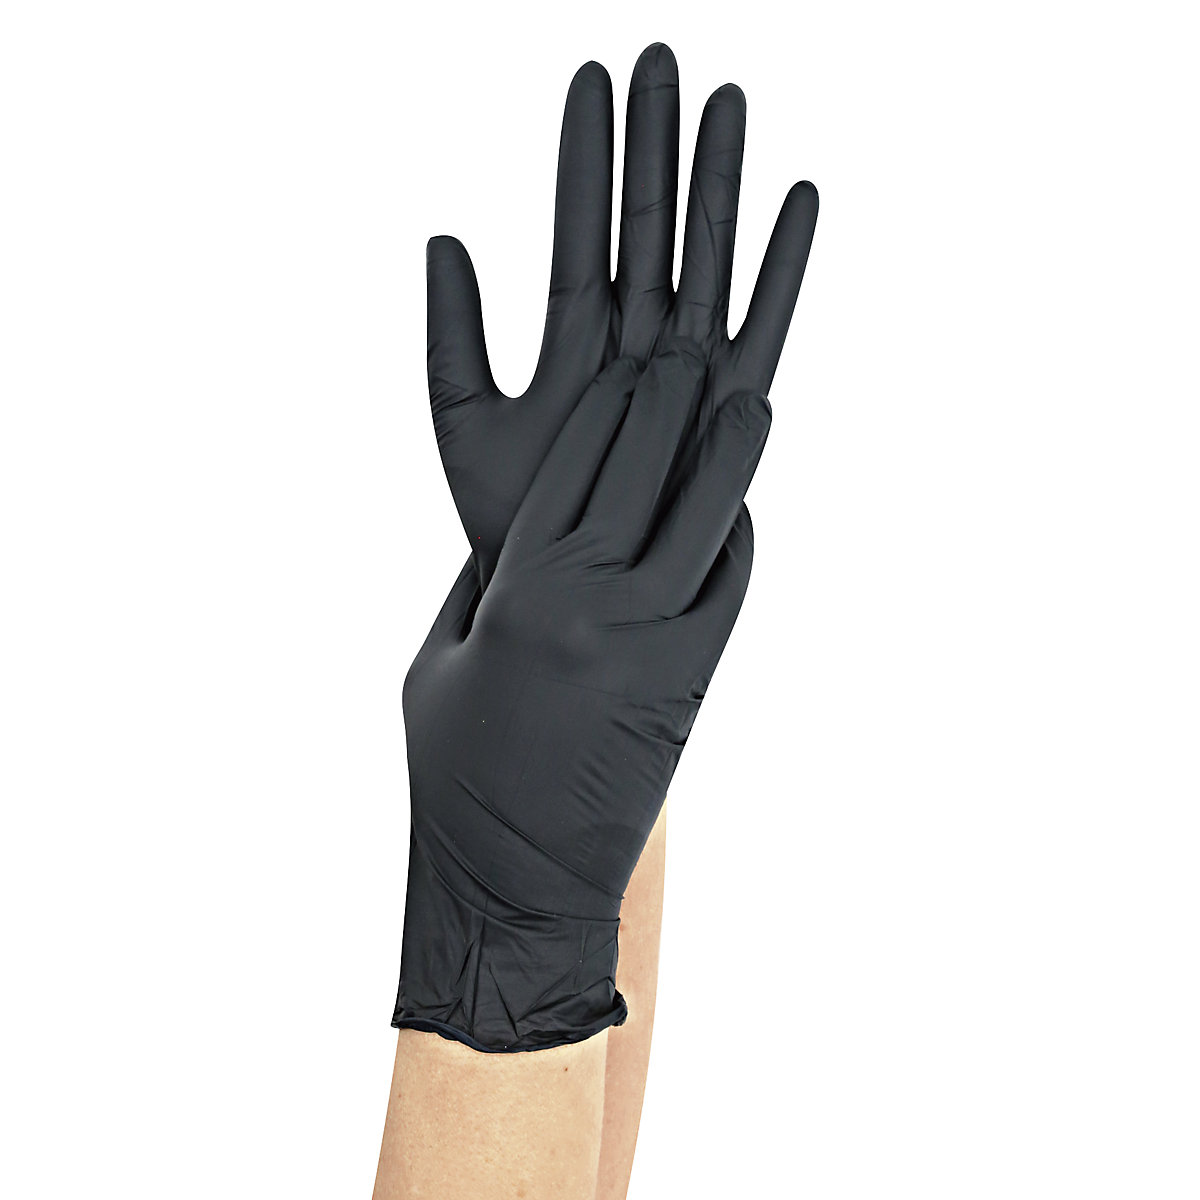 SAFE LIGHT disposable nitrile gloves